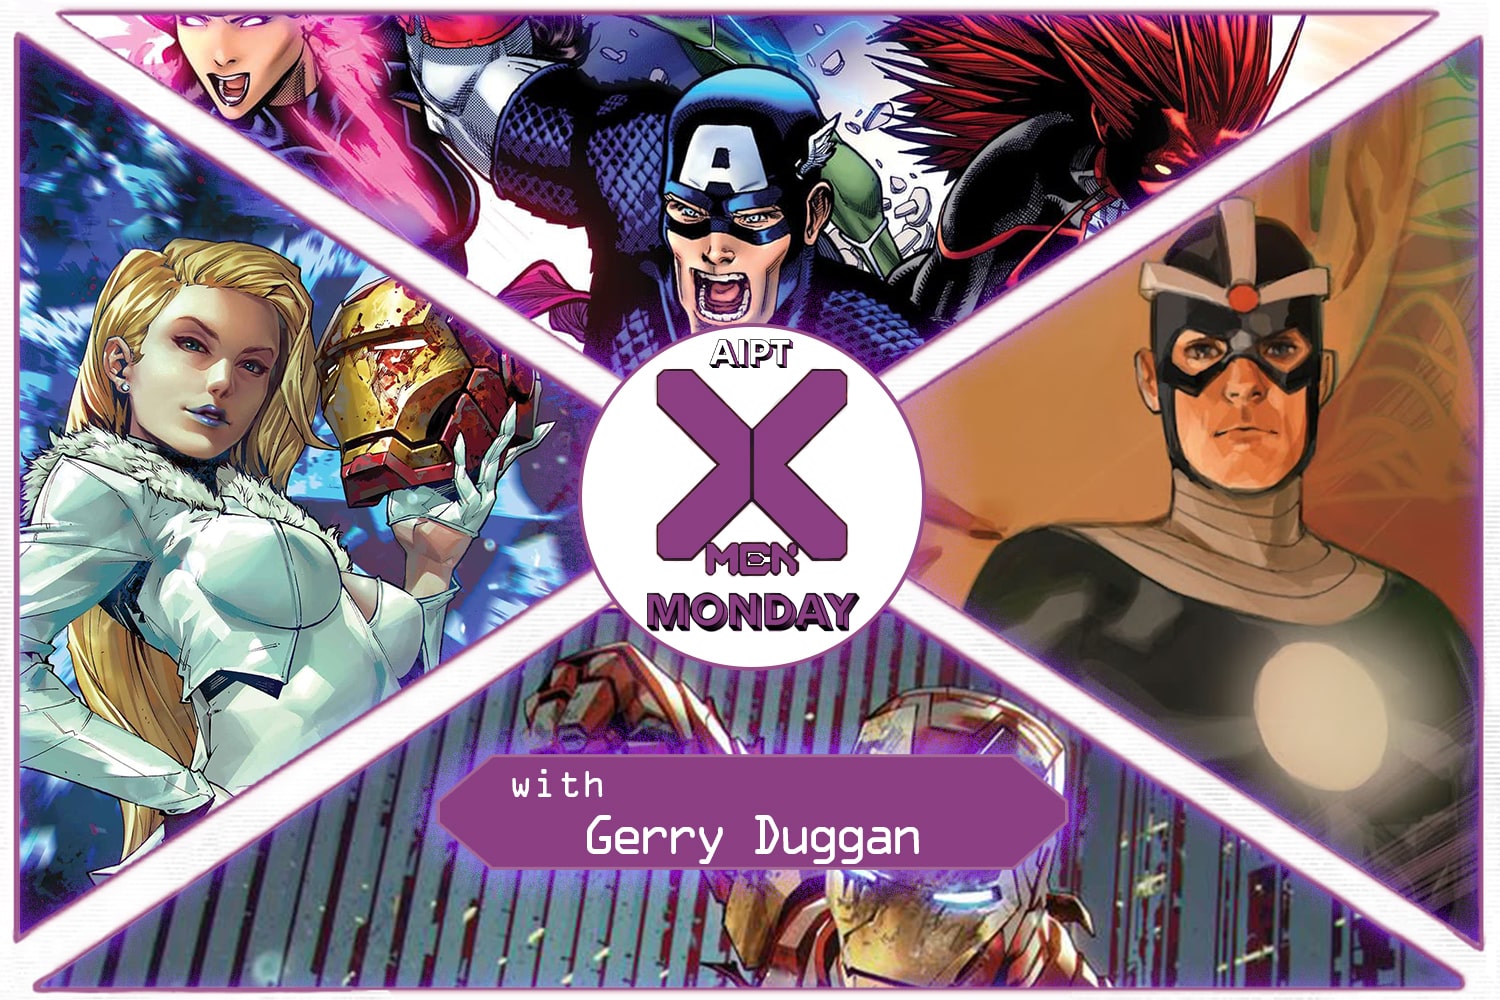 X-Men Monday #197 - Gerry Duggan Talks 'X-Men', 'Invincible Iron Man', and 'Uncanny Avengers'